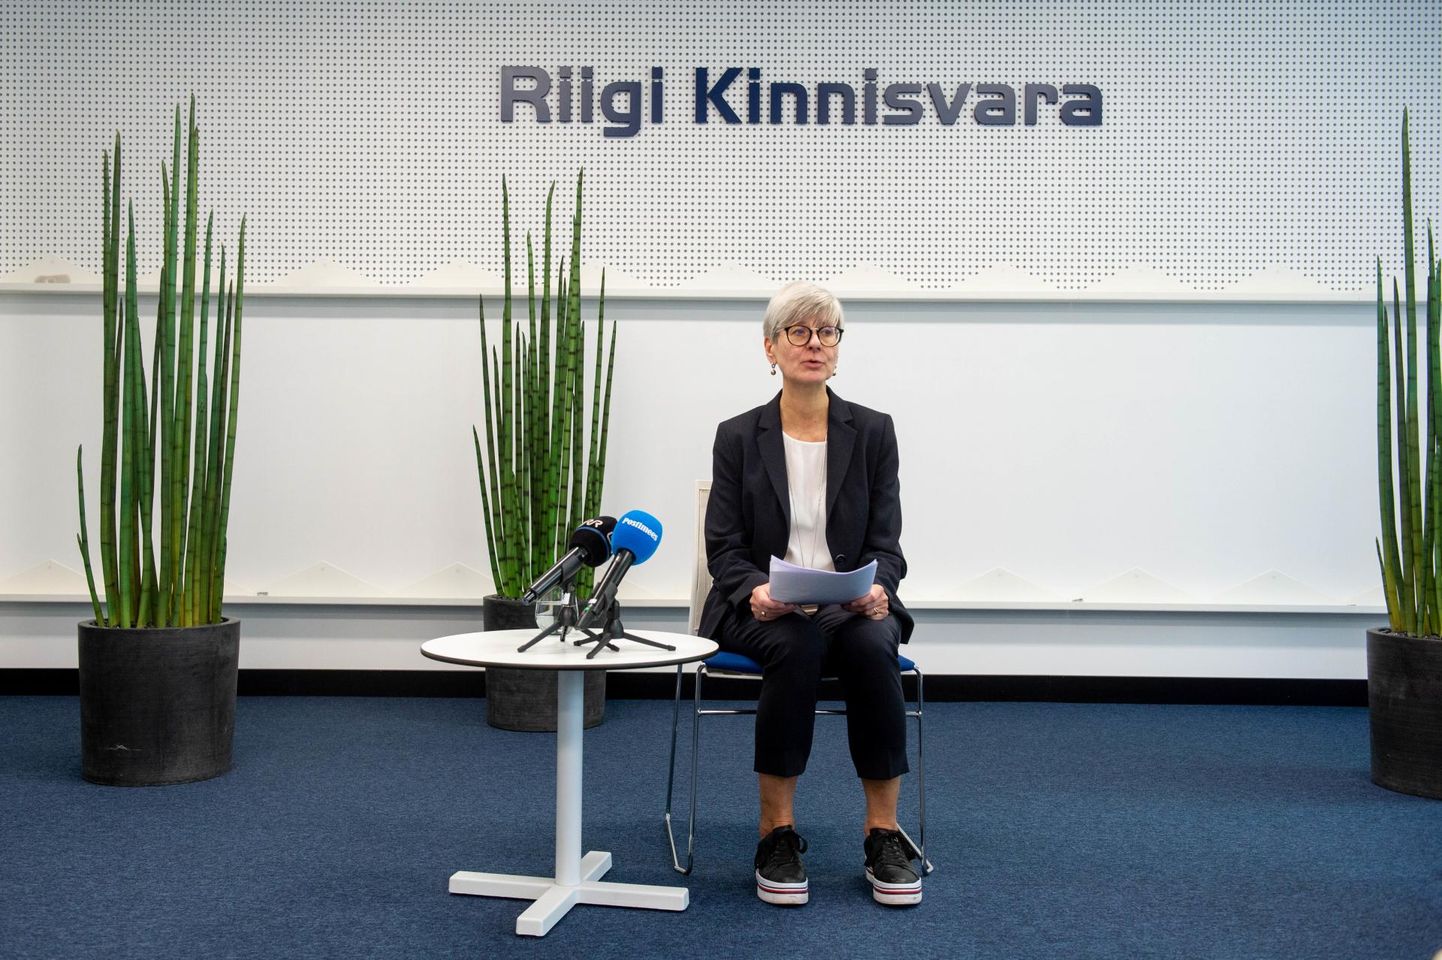  Riigi Kinnisvara tegevjuht Kati Kusmin pressikonverentsil. Teemaks terviseameti ladu.